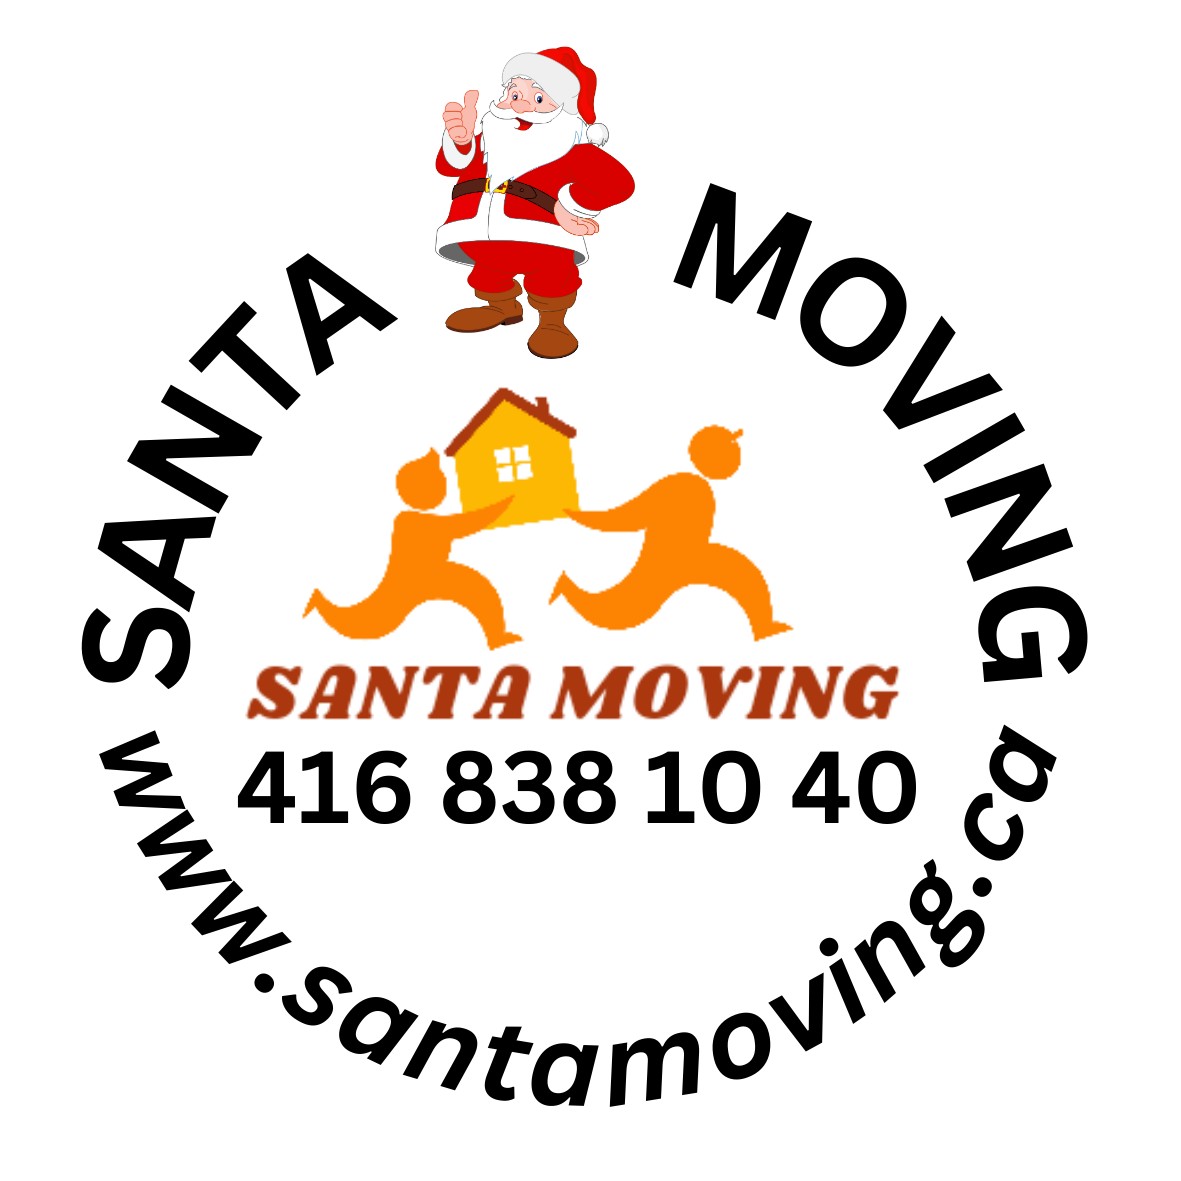 Santa Moving Inc.'s logo